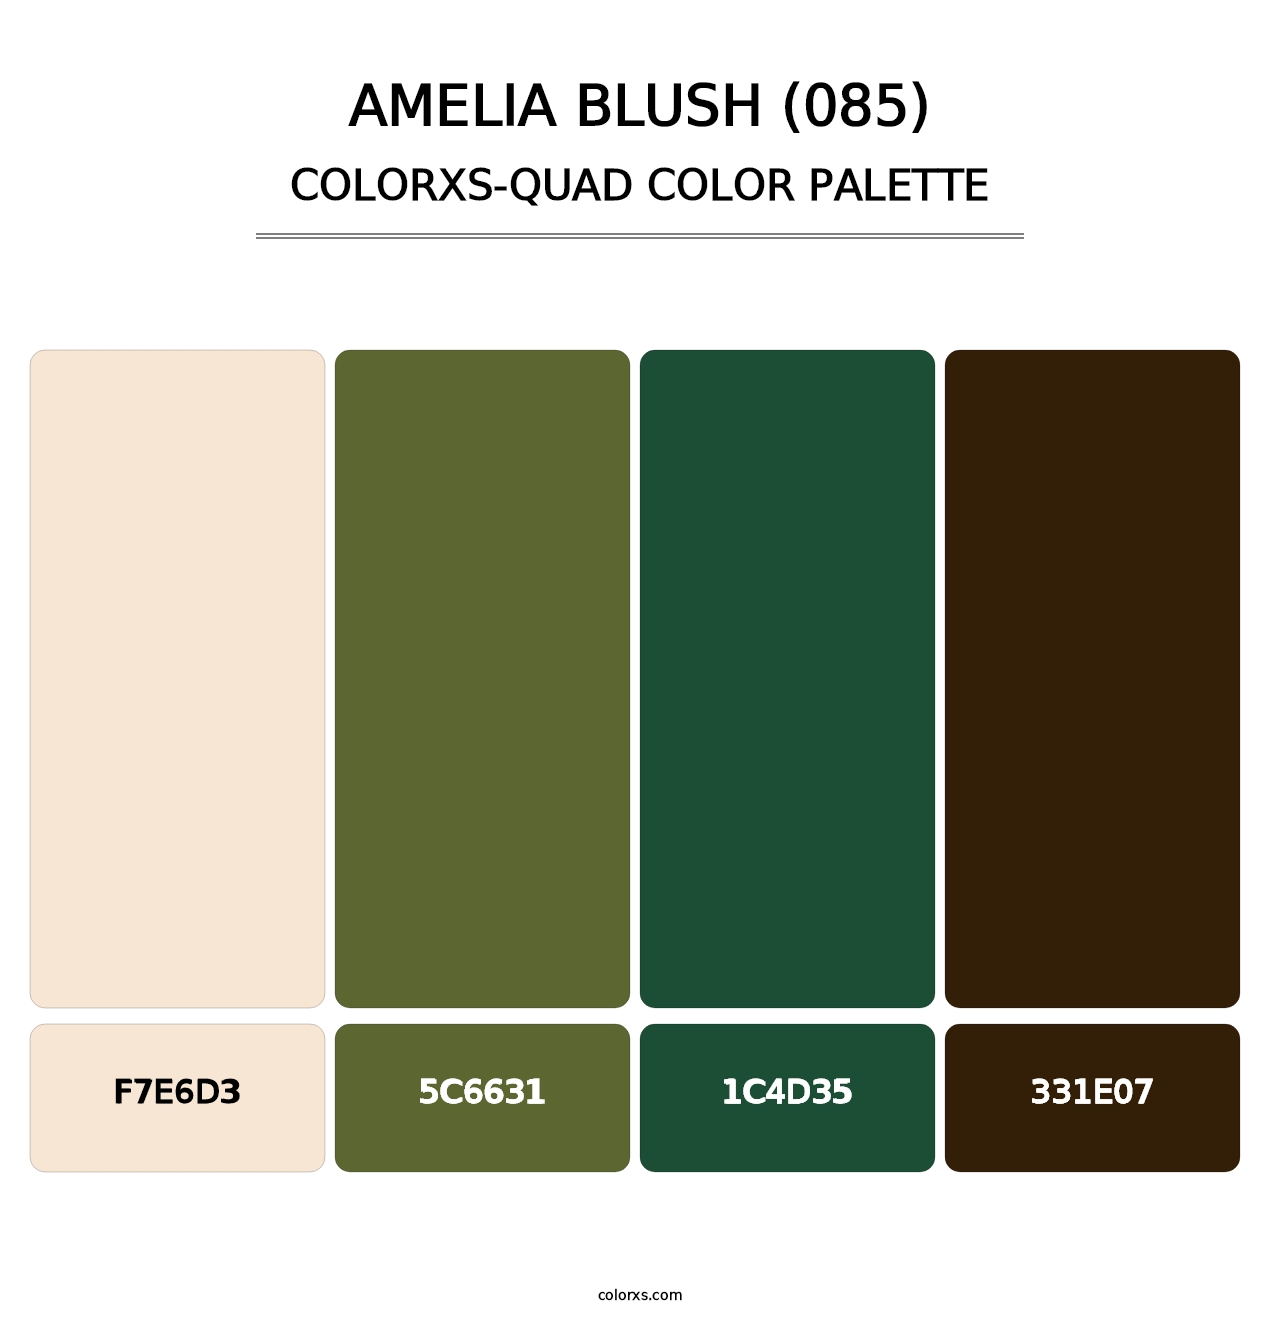 Amelia Blush (085) - Colorxs Quad Palette